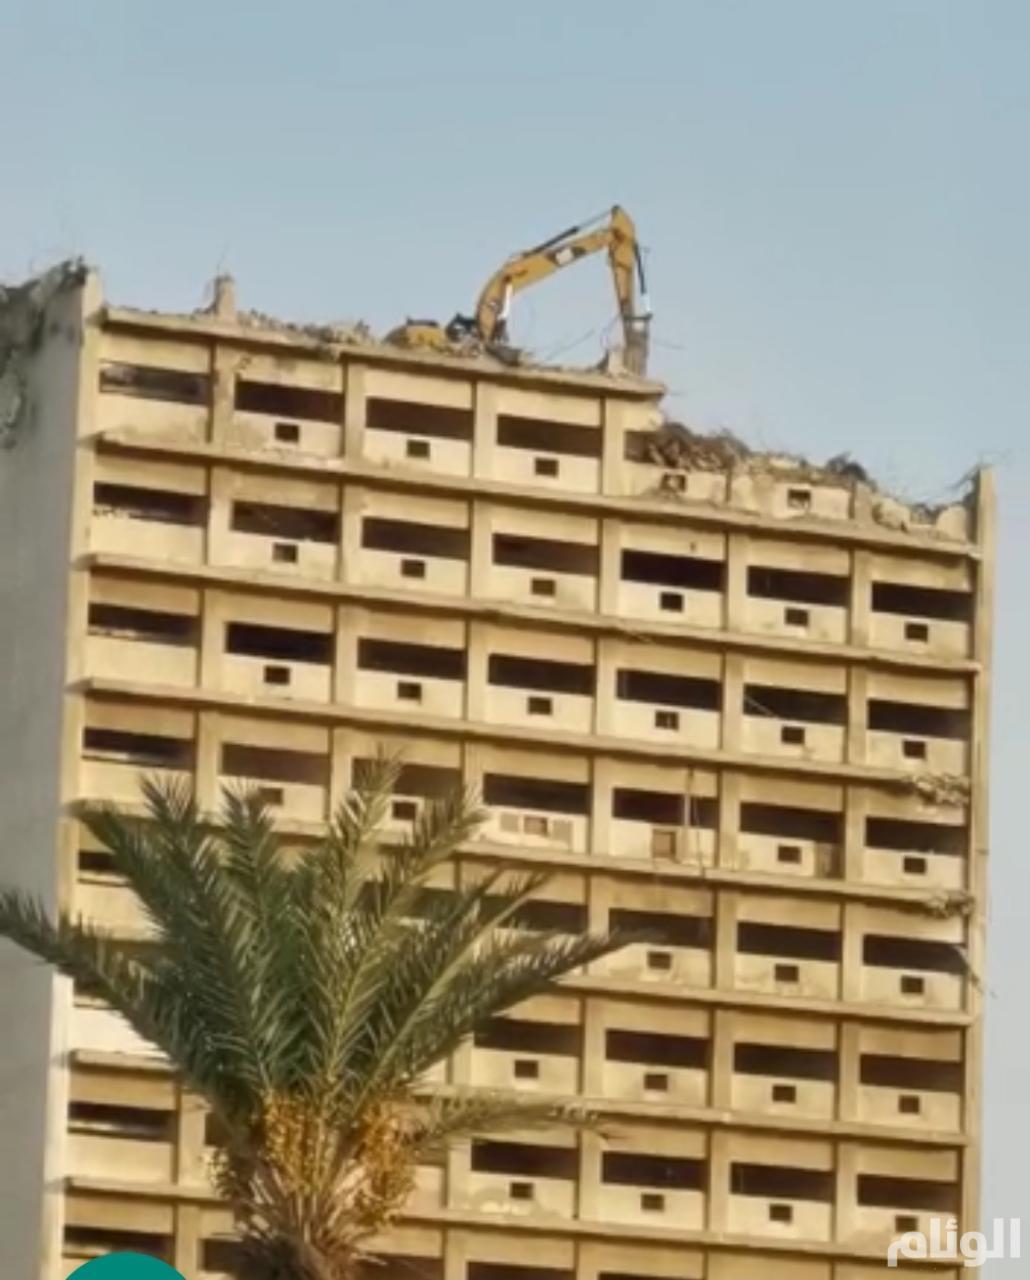 هيئة الإذاعة تعلق على هدم مبنى التلفزيون في جدة